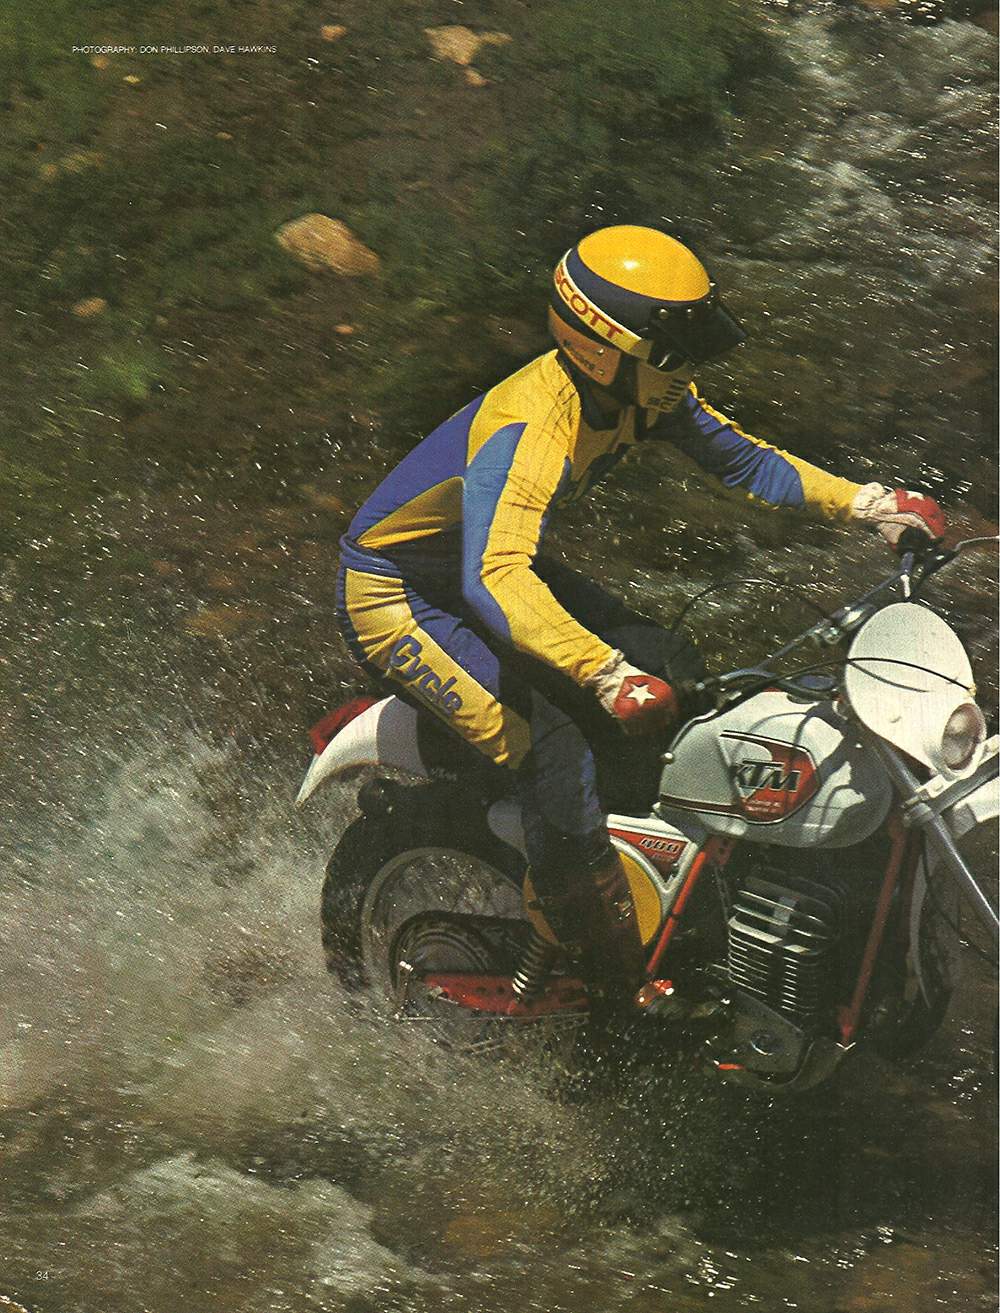 , 1980 KTM 350 Enduro